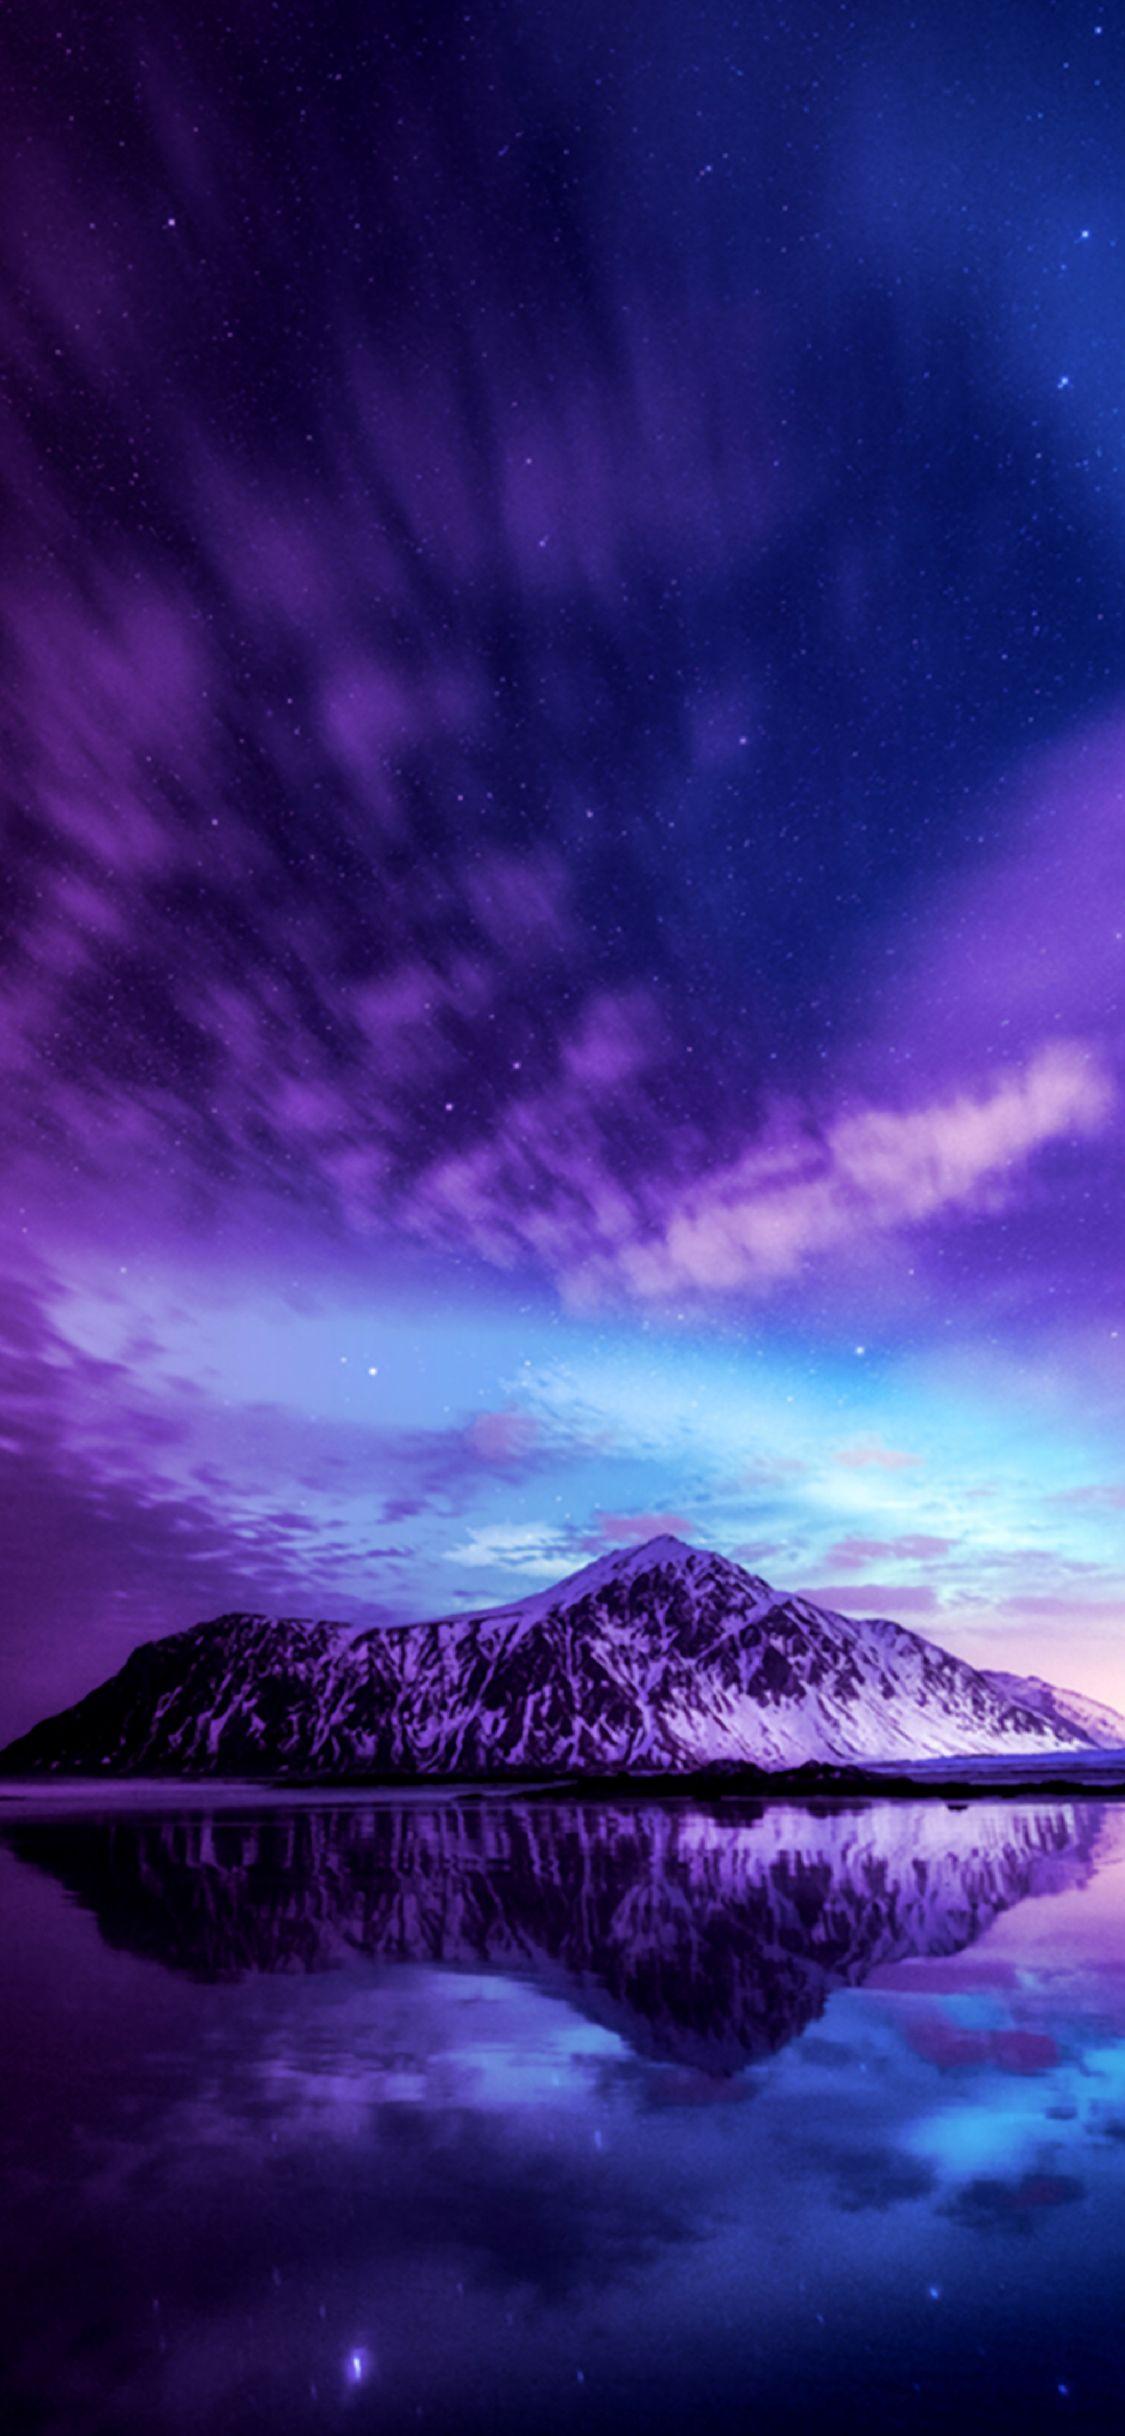 A mountain in a purple sky. Zollotech Wallpaper in 2019